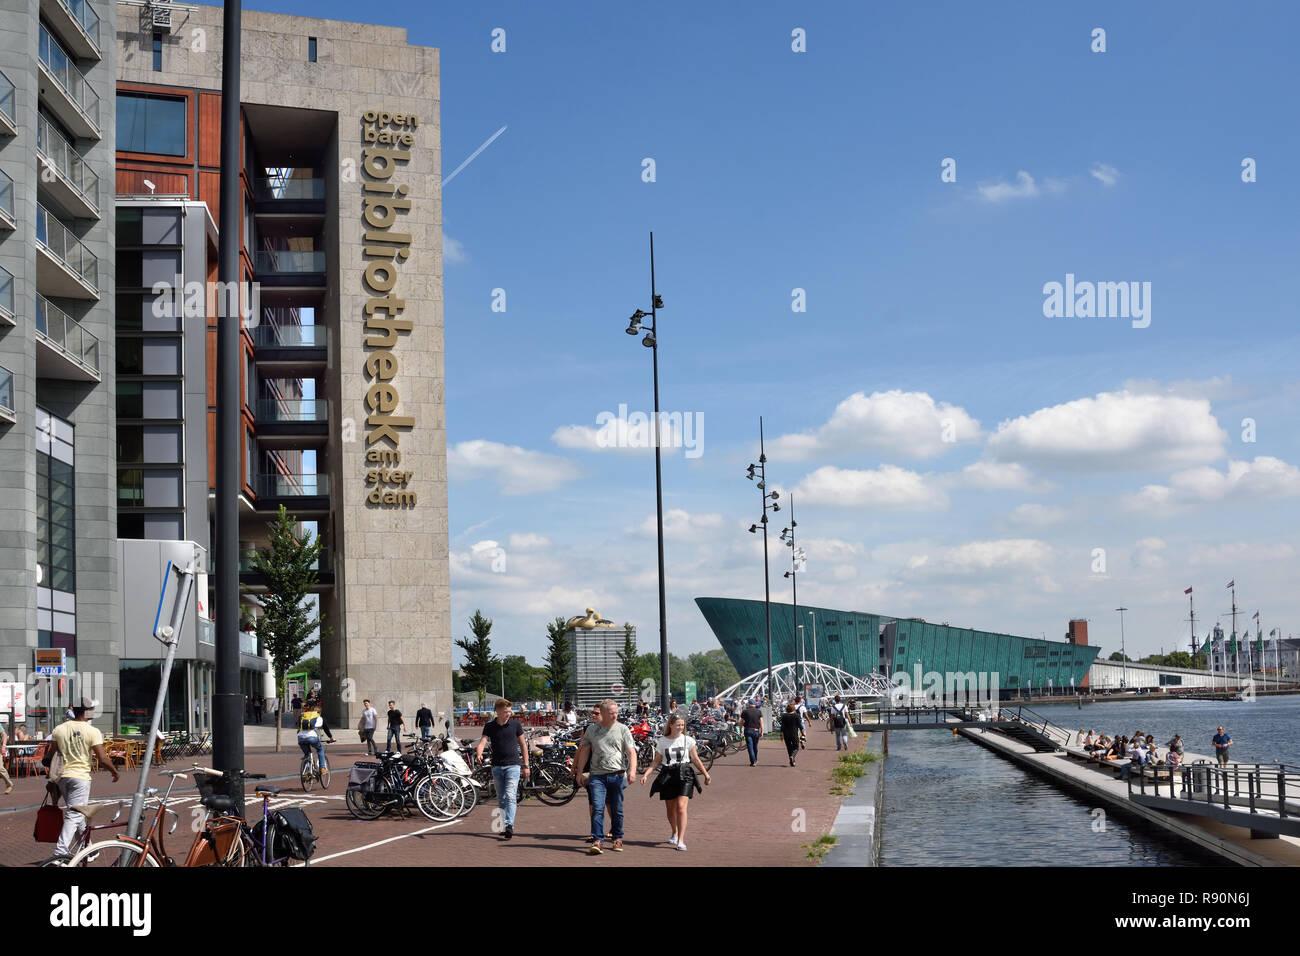 Bibliothek - oosterdok Kade in der Nähe von Amsterdamer Hauptbahnhof - Nemo Science Museum Amsterdam Niederlande Stockfoto